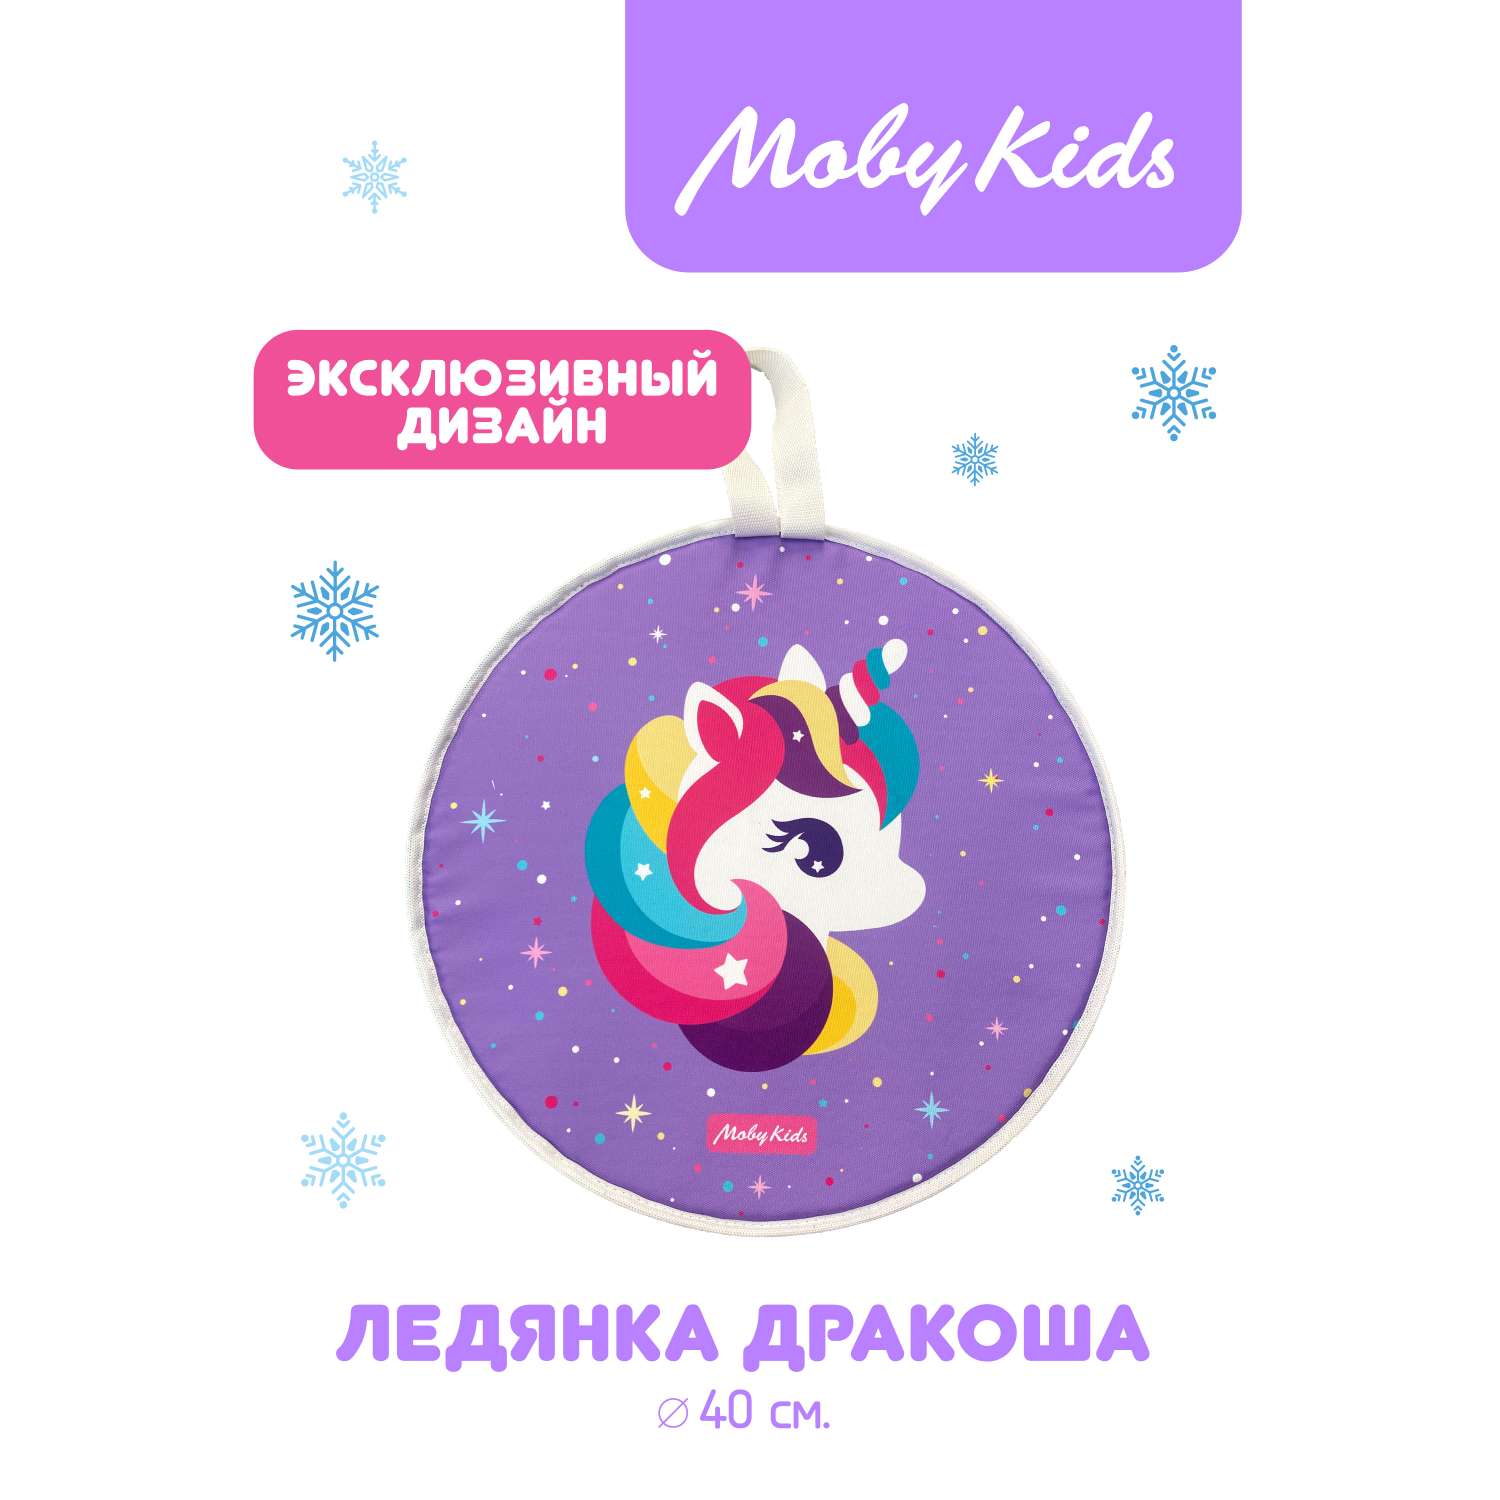 Ледянка ПВХ для детей Moby kids Единорог 40 см мягкая круглая с ручкой - фото 2